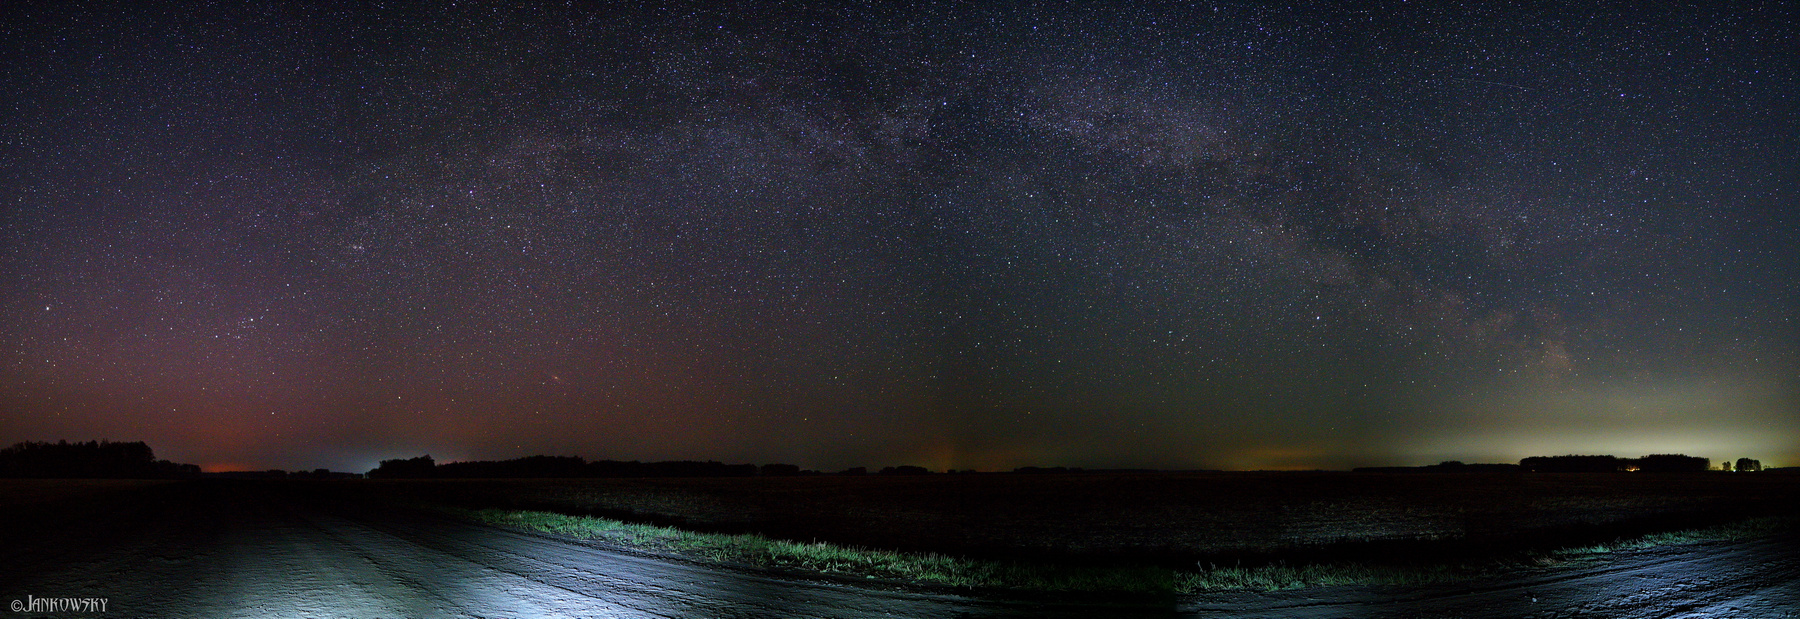 Восход Млечного пути. Омская область омск млечный путь milky way панорама астропейзаж поле звездное небо